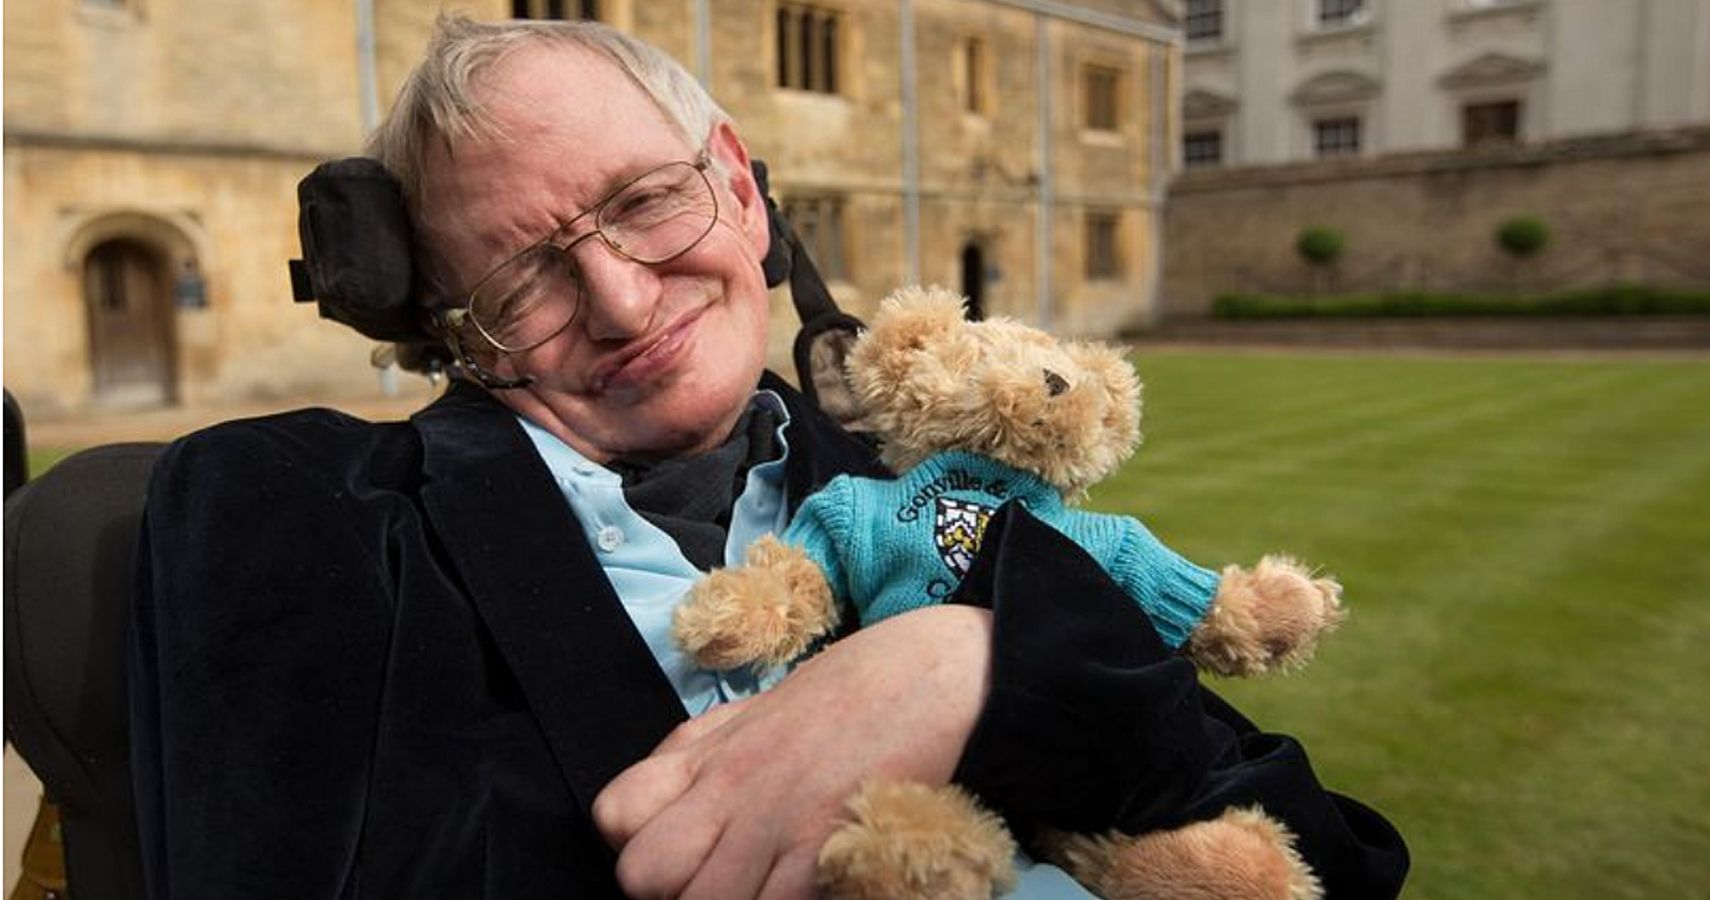 Stephen Hawking Fed Cinquenta sem-teto no dia de seu funeral